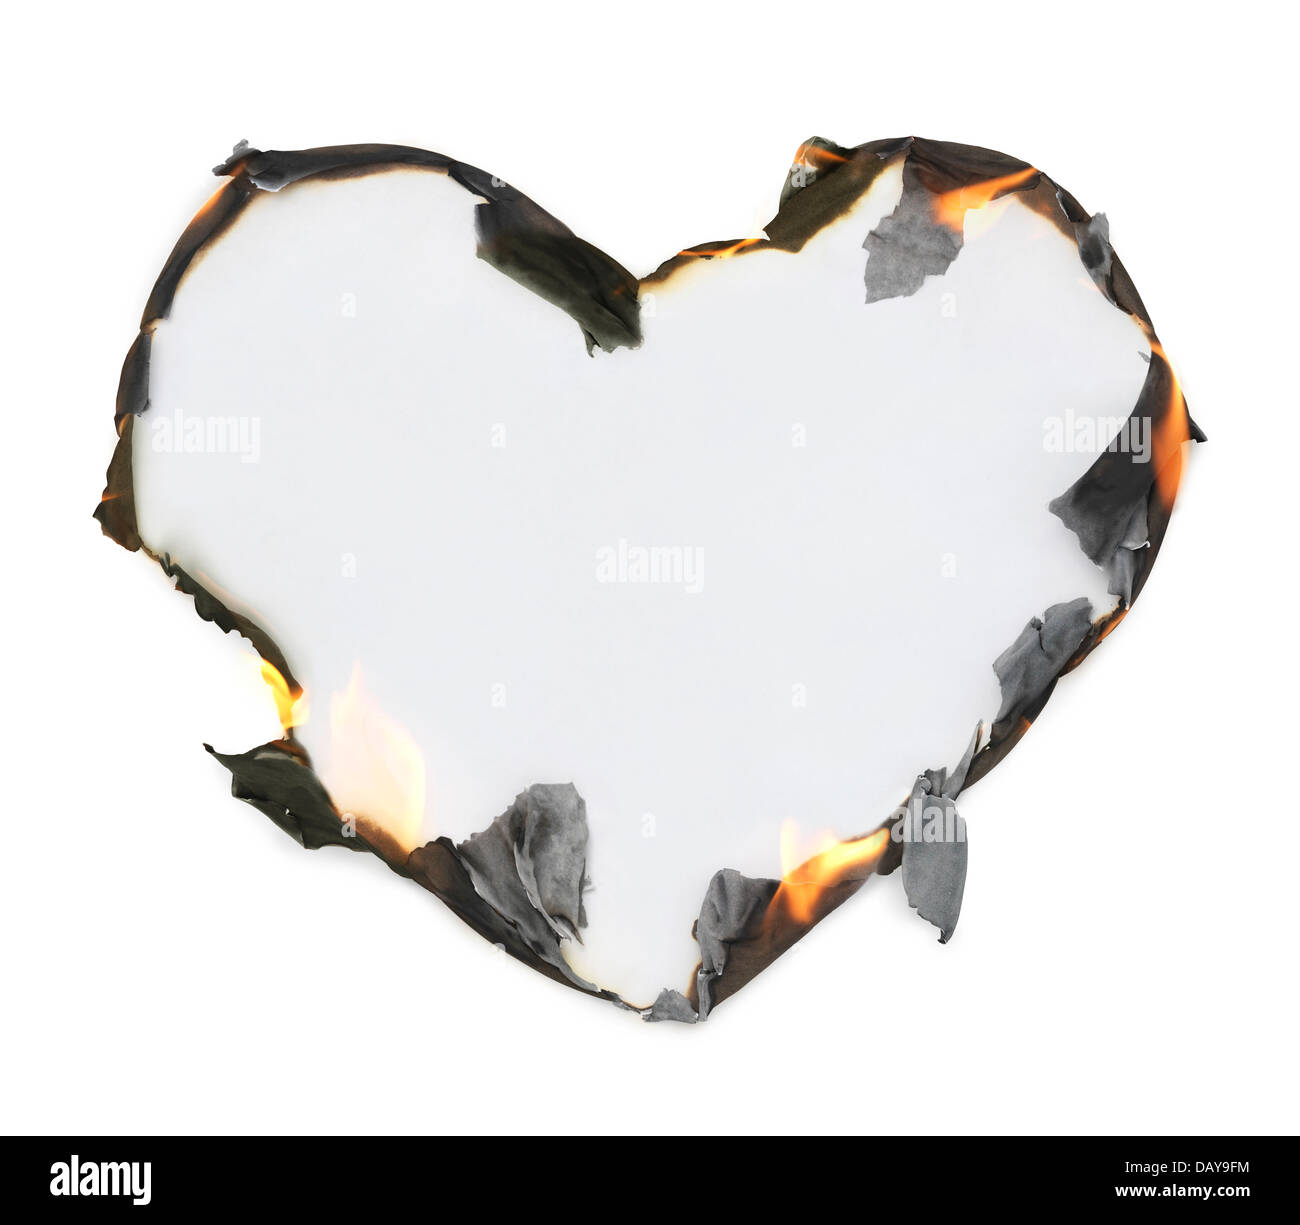 En blanco de papel en forma de corazón con la quema de los bordes, marco conceptual artístico aislado sobre fondo blanco con trazado de recorte. Foto de stock